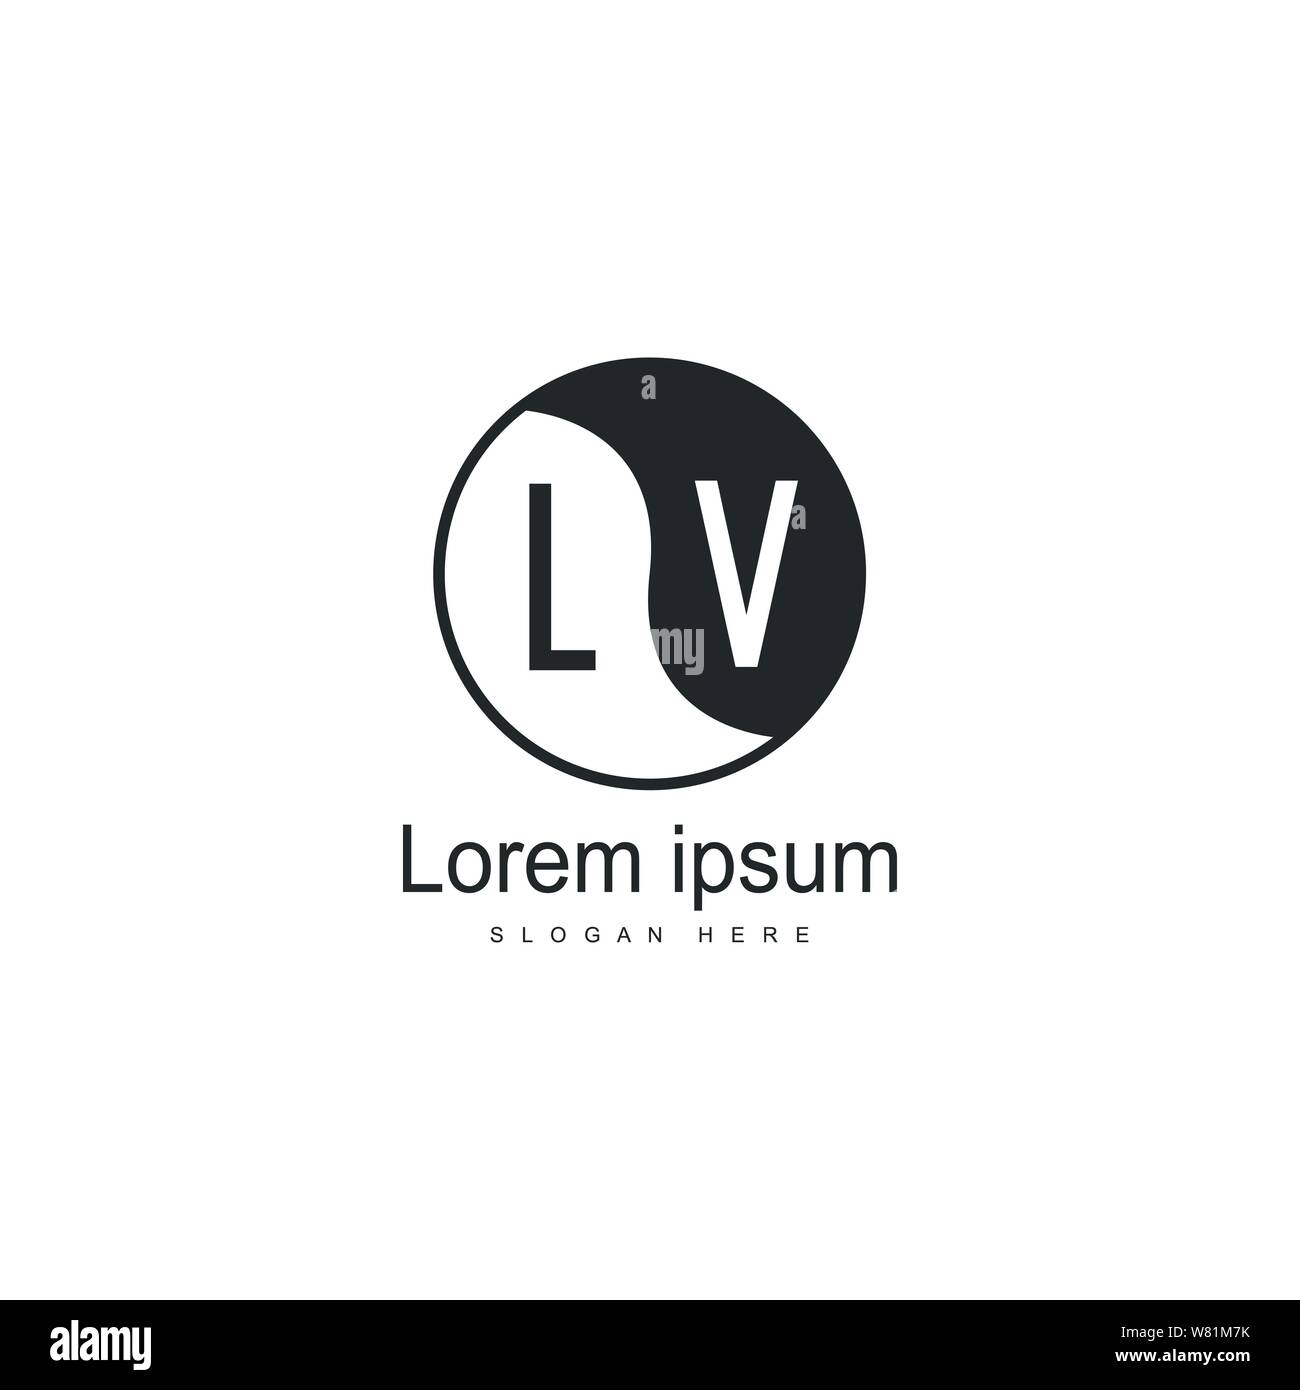 Louis Vuitton Logo Picture #107040764